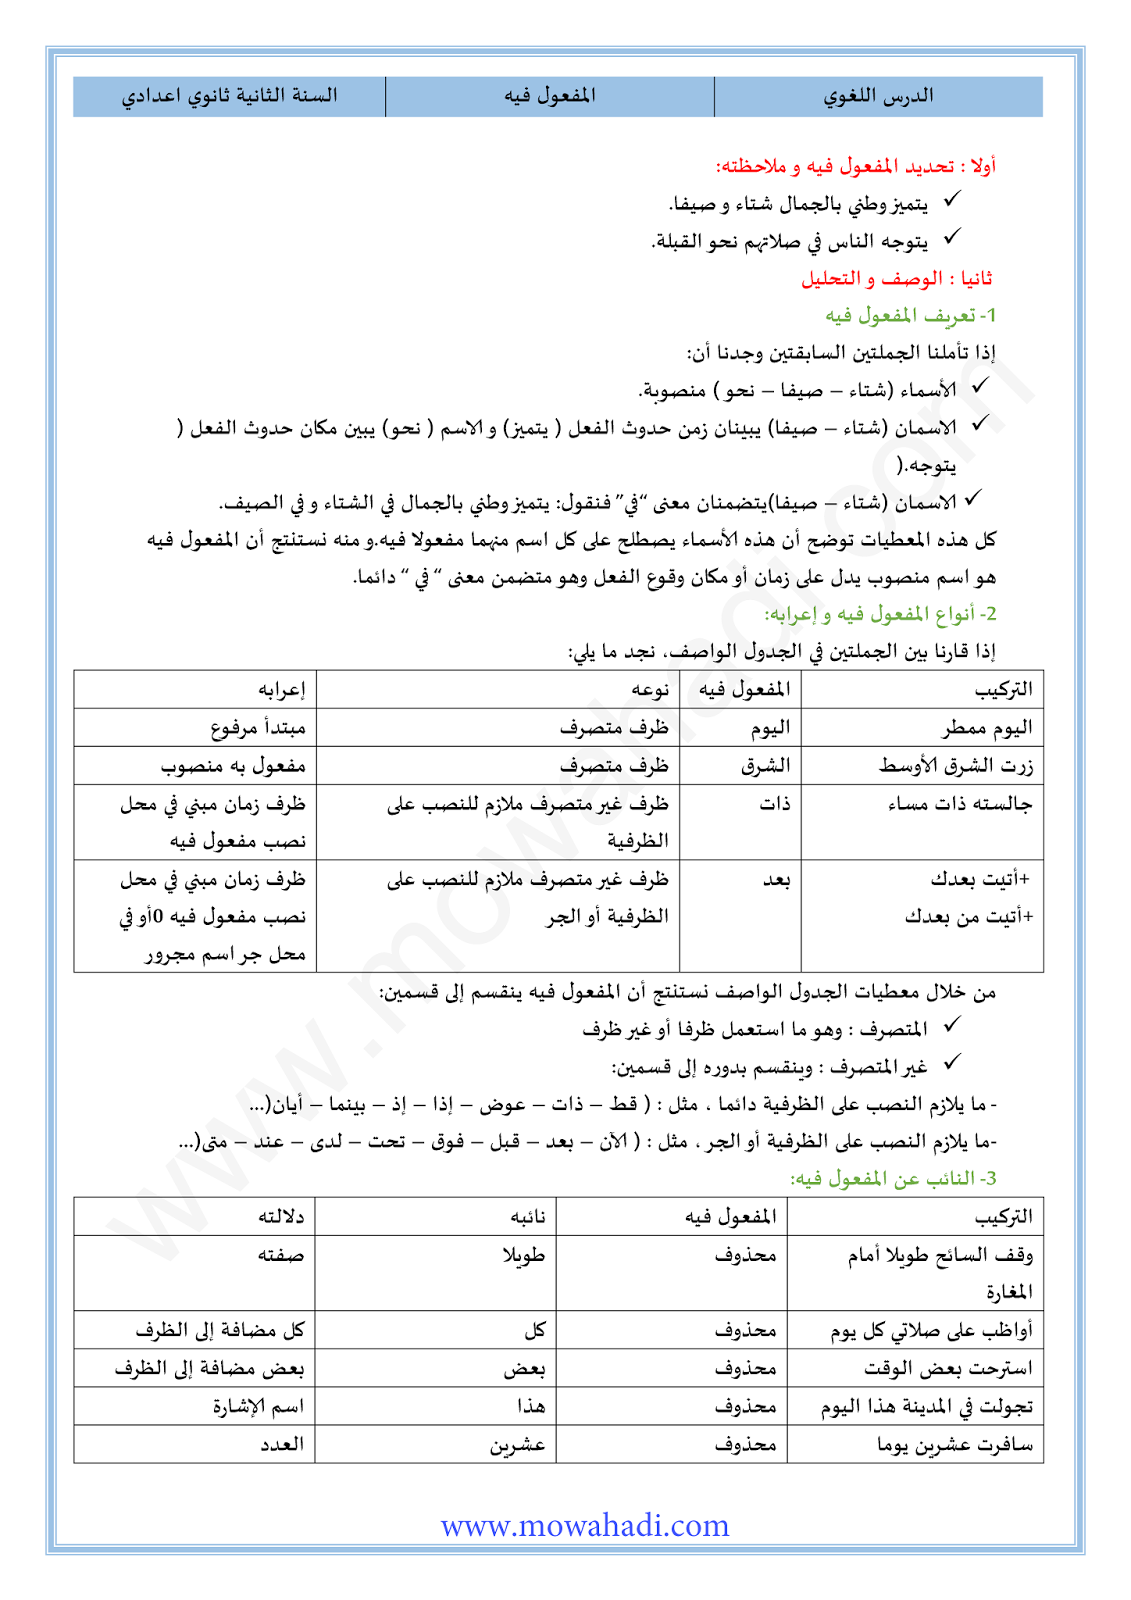 الدرس اللغوي المفعول فيه للسنة الثانية اعدادي في مادة اللغة العربية 8-cours-loghawi2_001